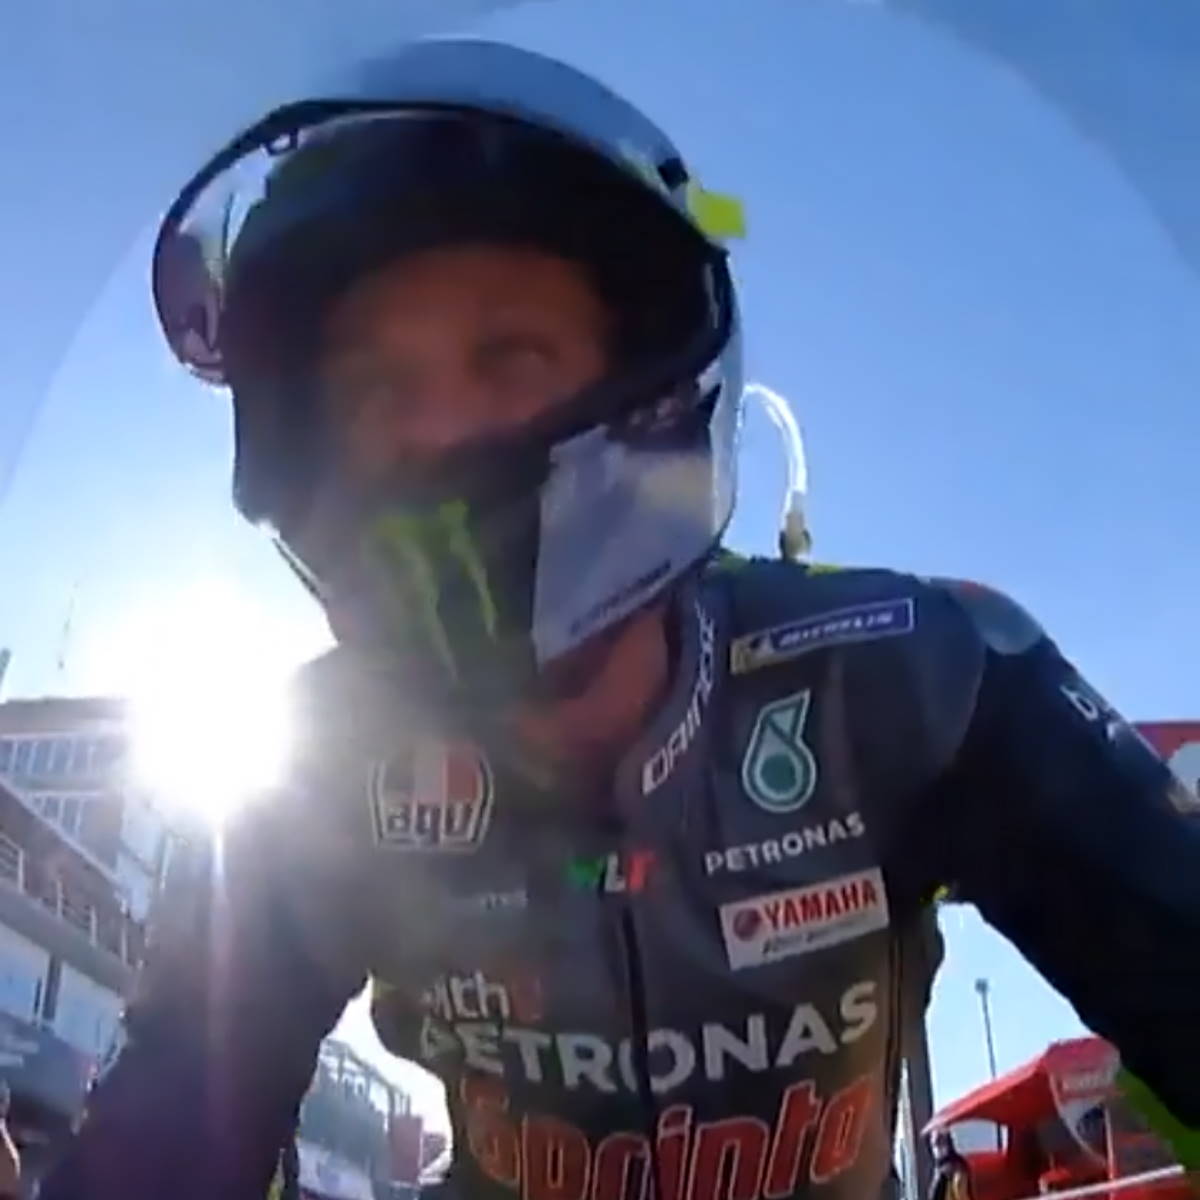 MotoGP, trionfo Ducati nel giorno dell'addio alle gare di Valentino Rossi